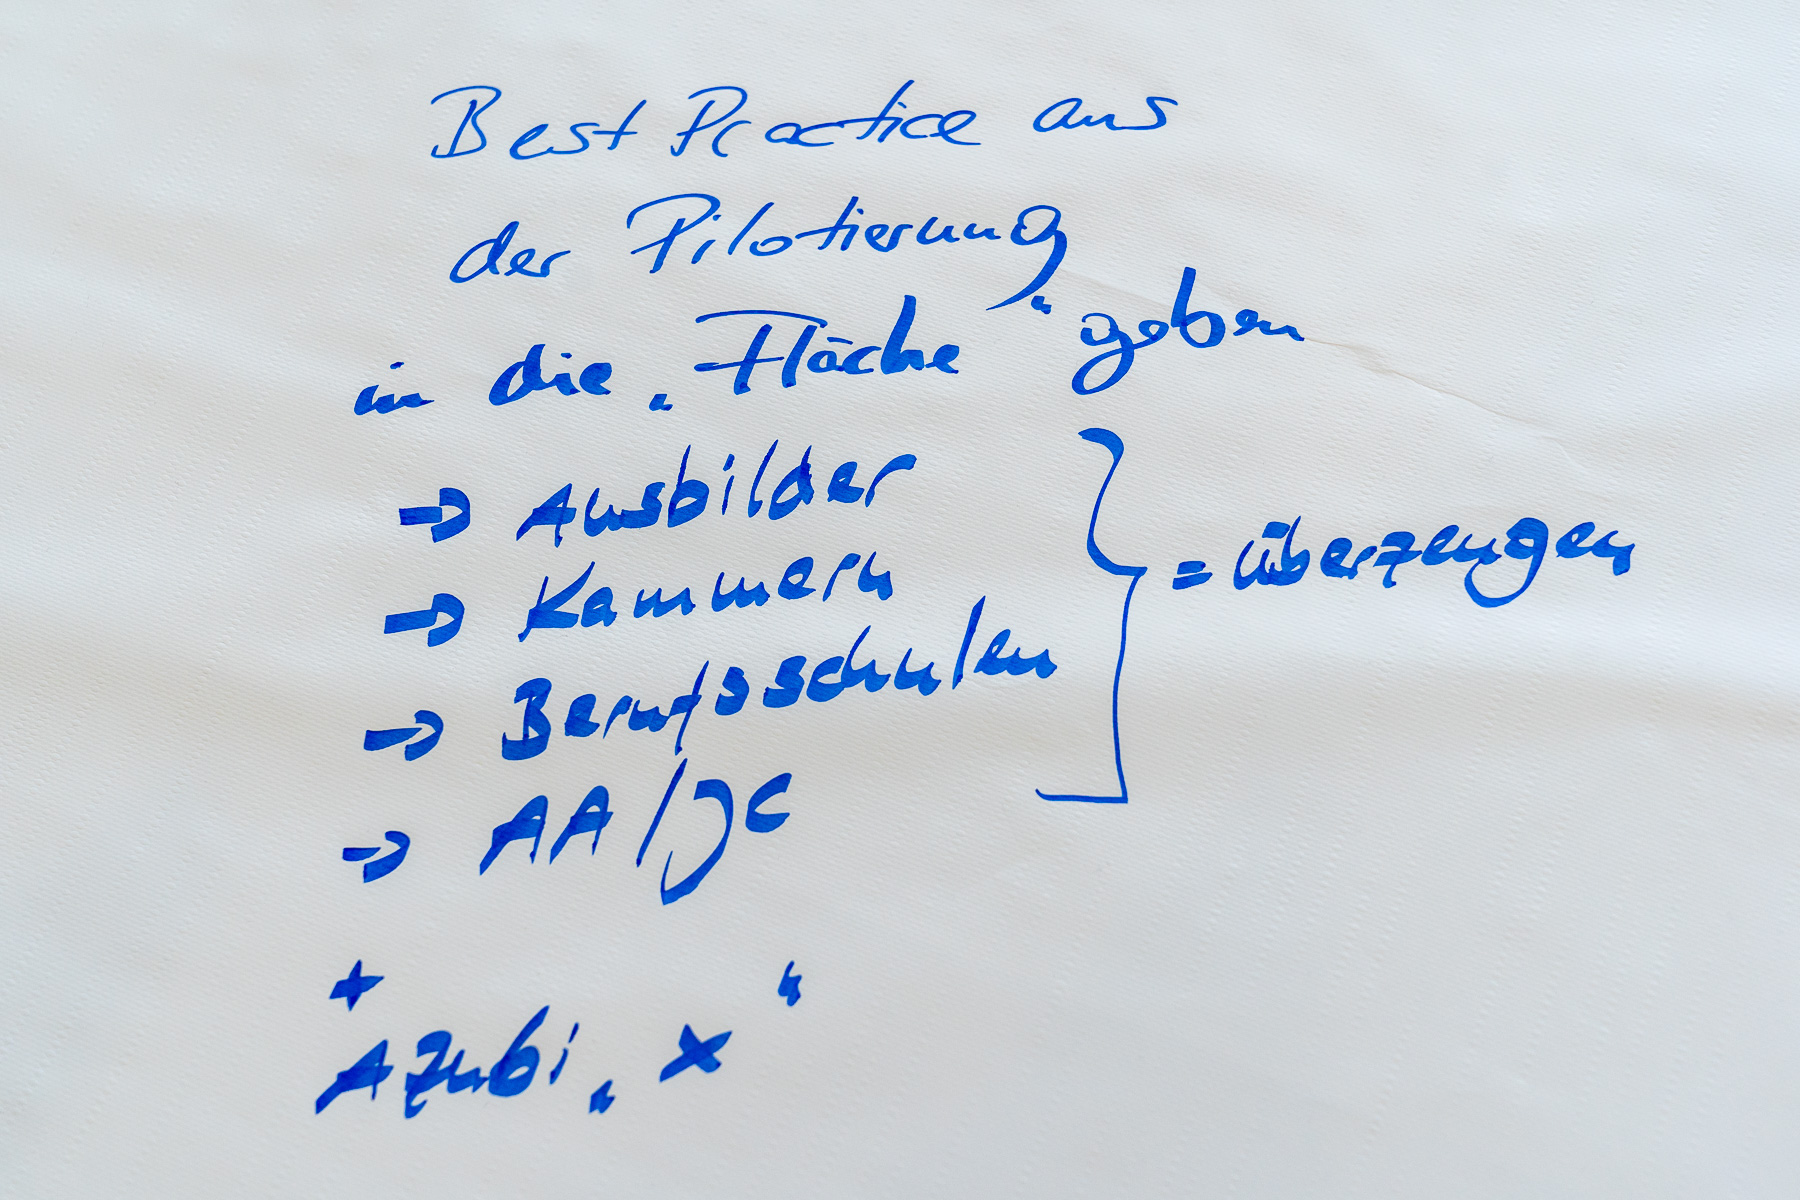 Bild: Bild zeigt Texte auf Thementisch 4: "Best Practice aus der Pilotierung in die "Fläche" geben (untergliedert in) Ausbilder; Kammern; Berufsschulen; AA/JC > überzeugen; + Azubi "X""